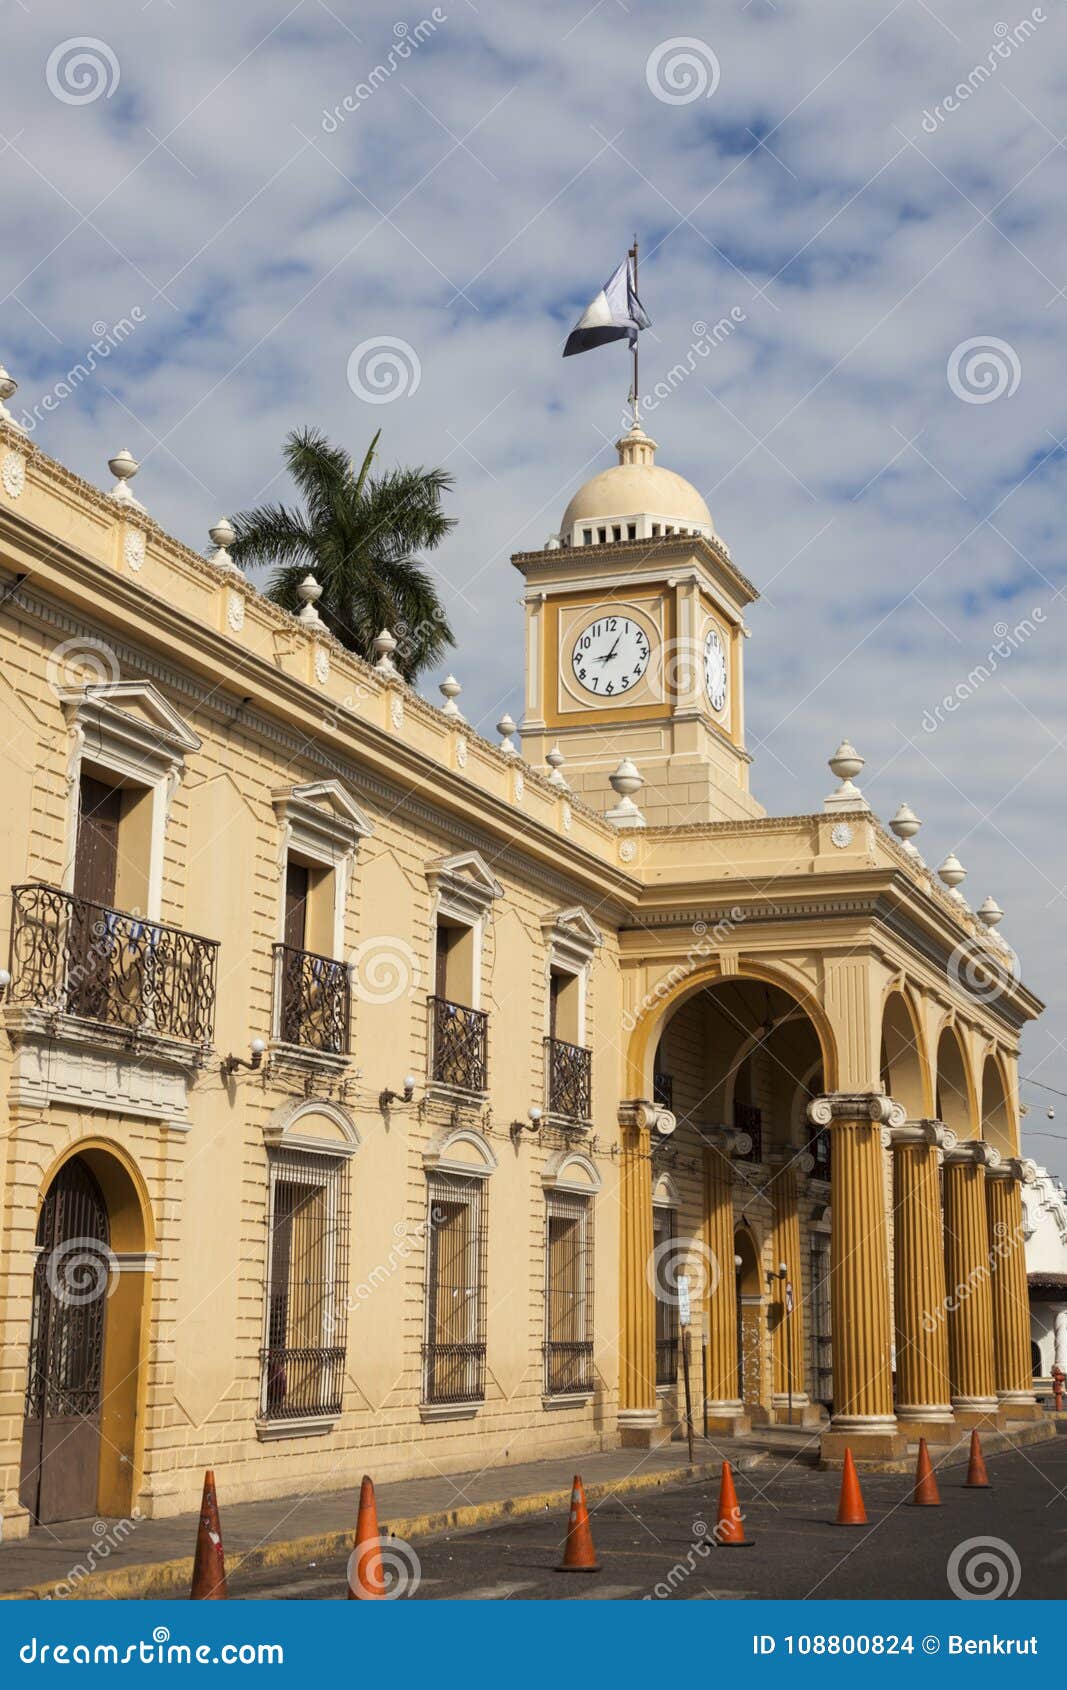 city hall of santa ana